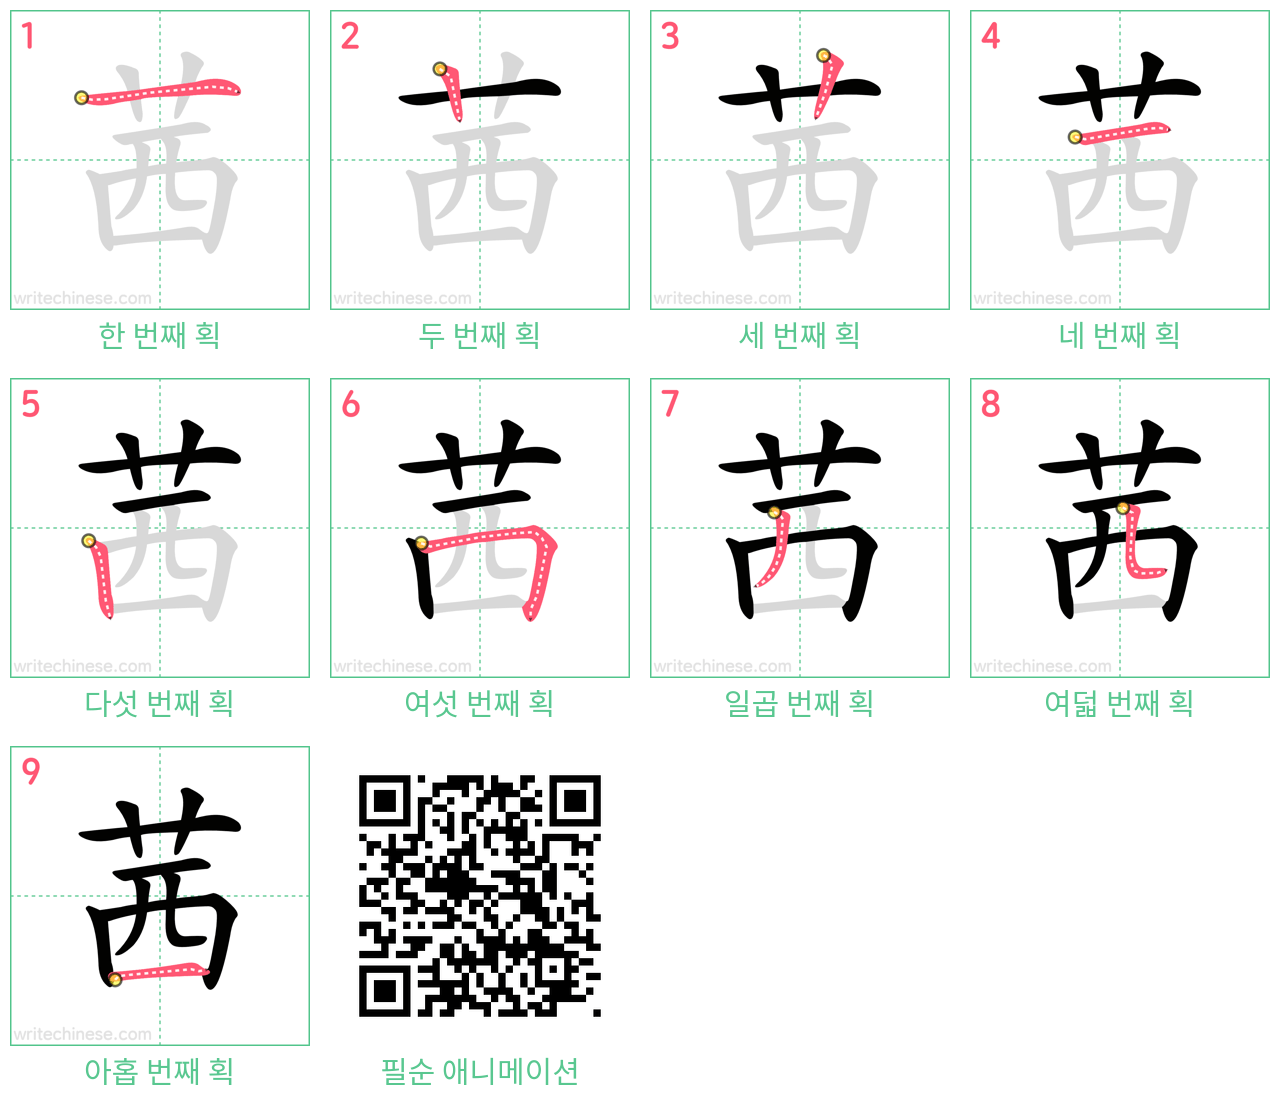 茜 step-by-step stroke order diagrams